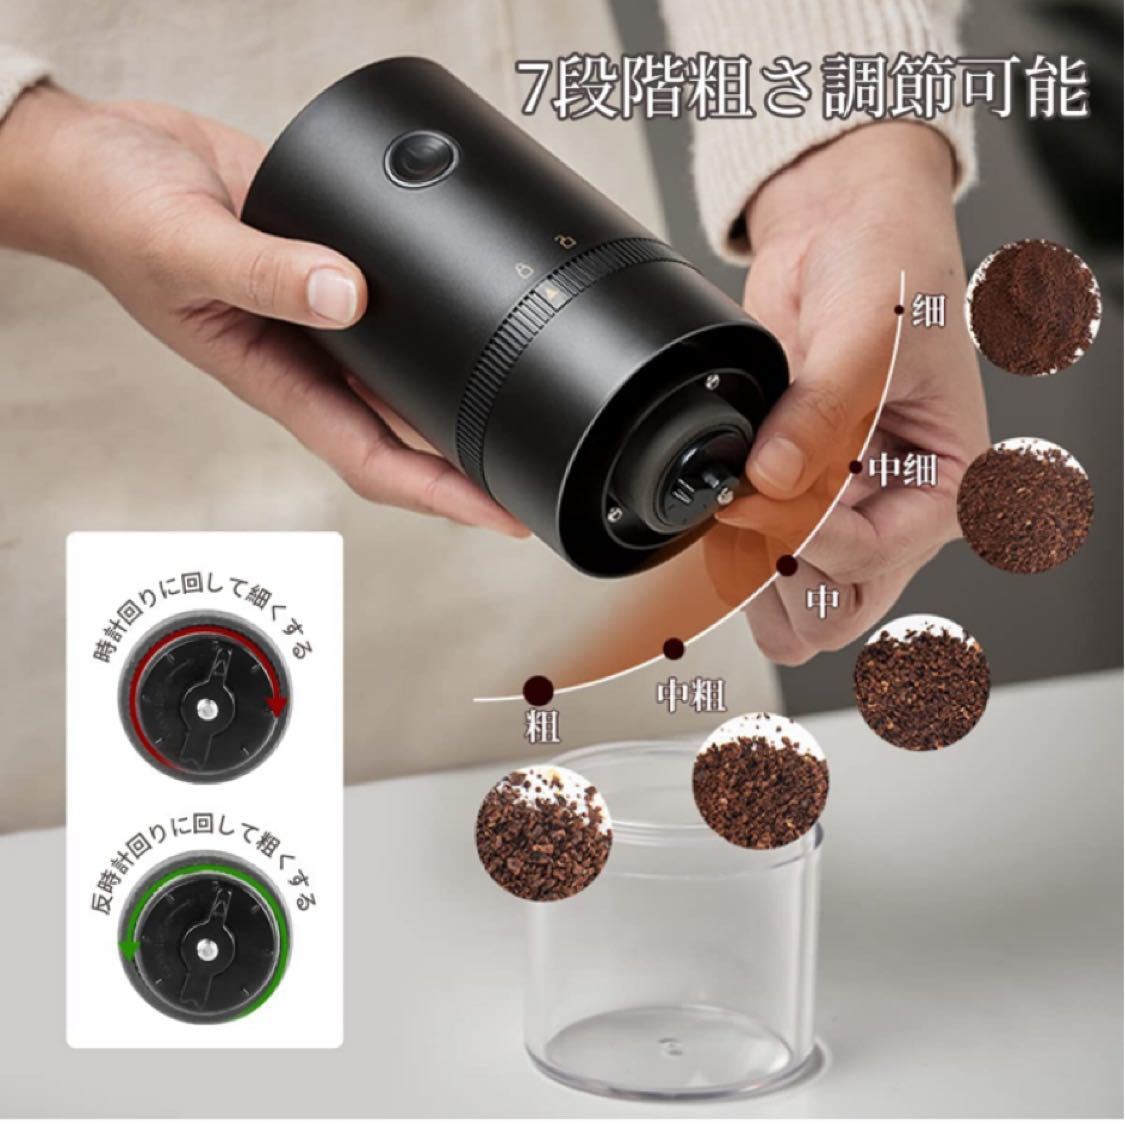 【2022改良版】 電動コーヒーミル コーヒーグラインダー 充電式 自動コーヒーミル 挽き具合7段階調整 セラミック 水洗い可能 掃除簡単 